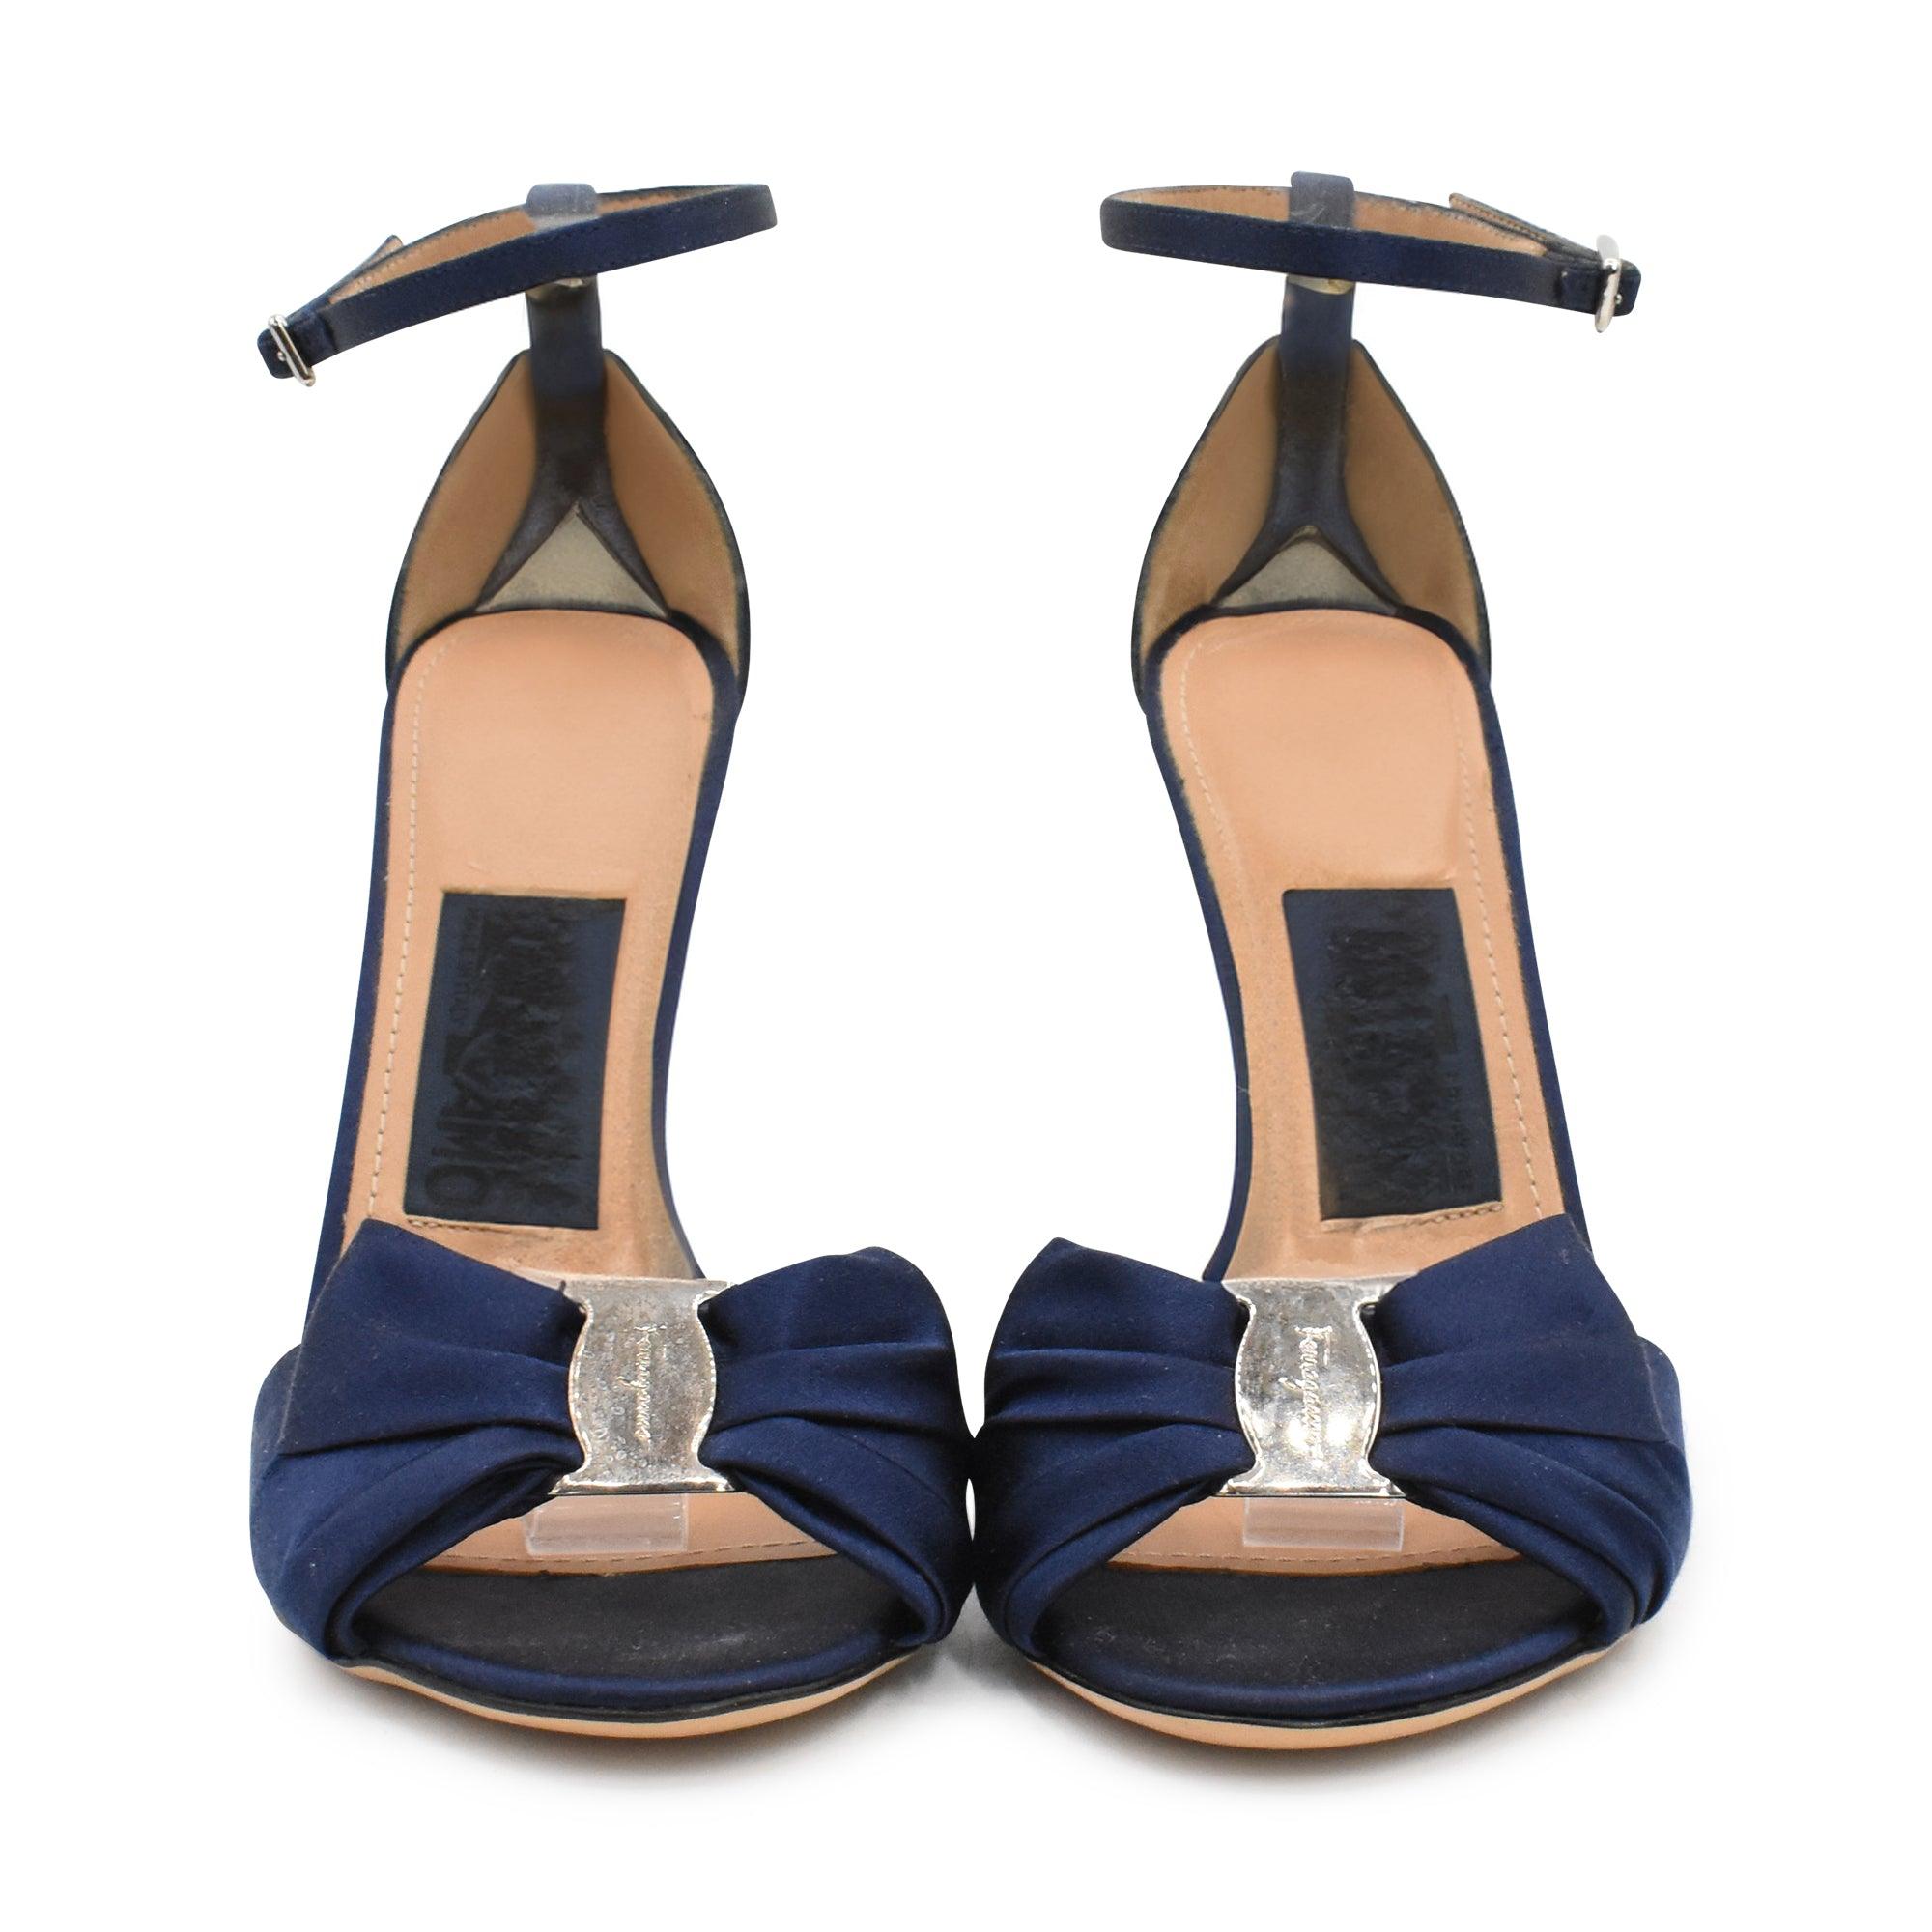 Ferragamo Heels - Women's 8 - Fashionably Yours